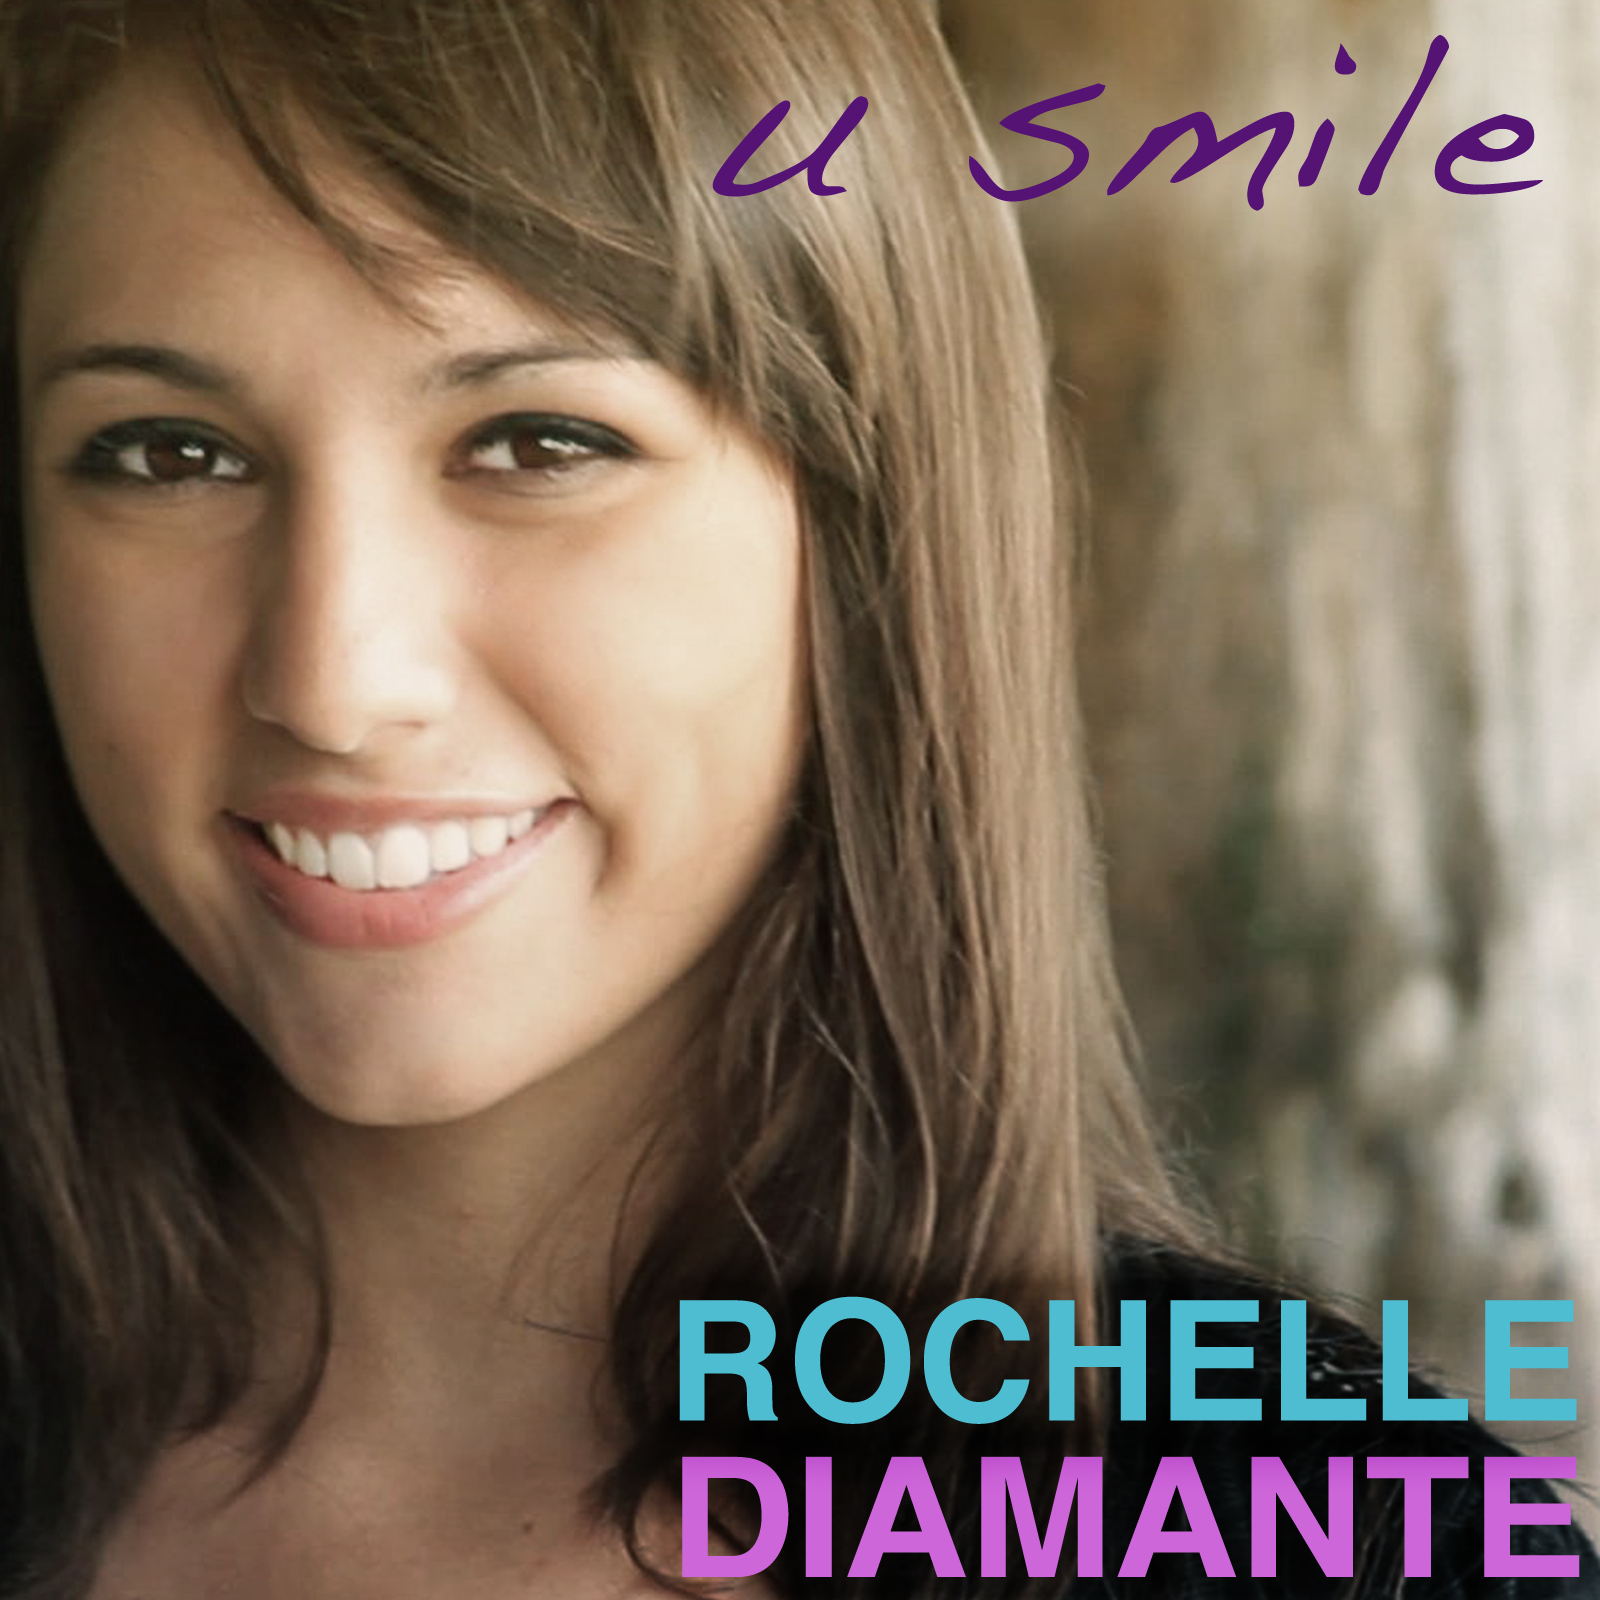 Rochelle Diamante - U Smile (Justin Bieber Cover)